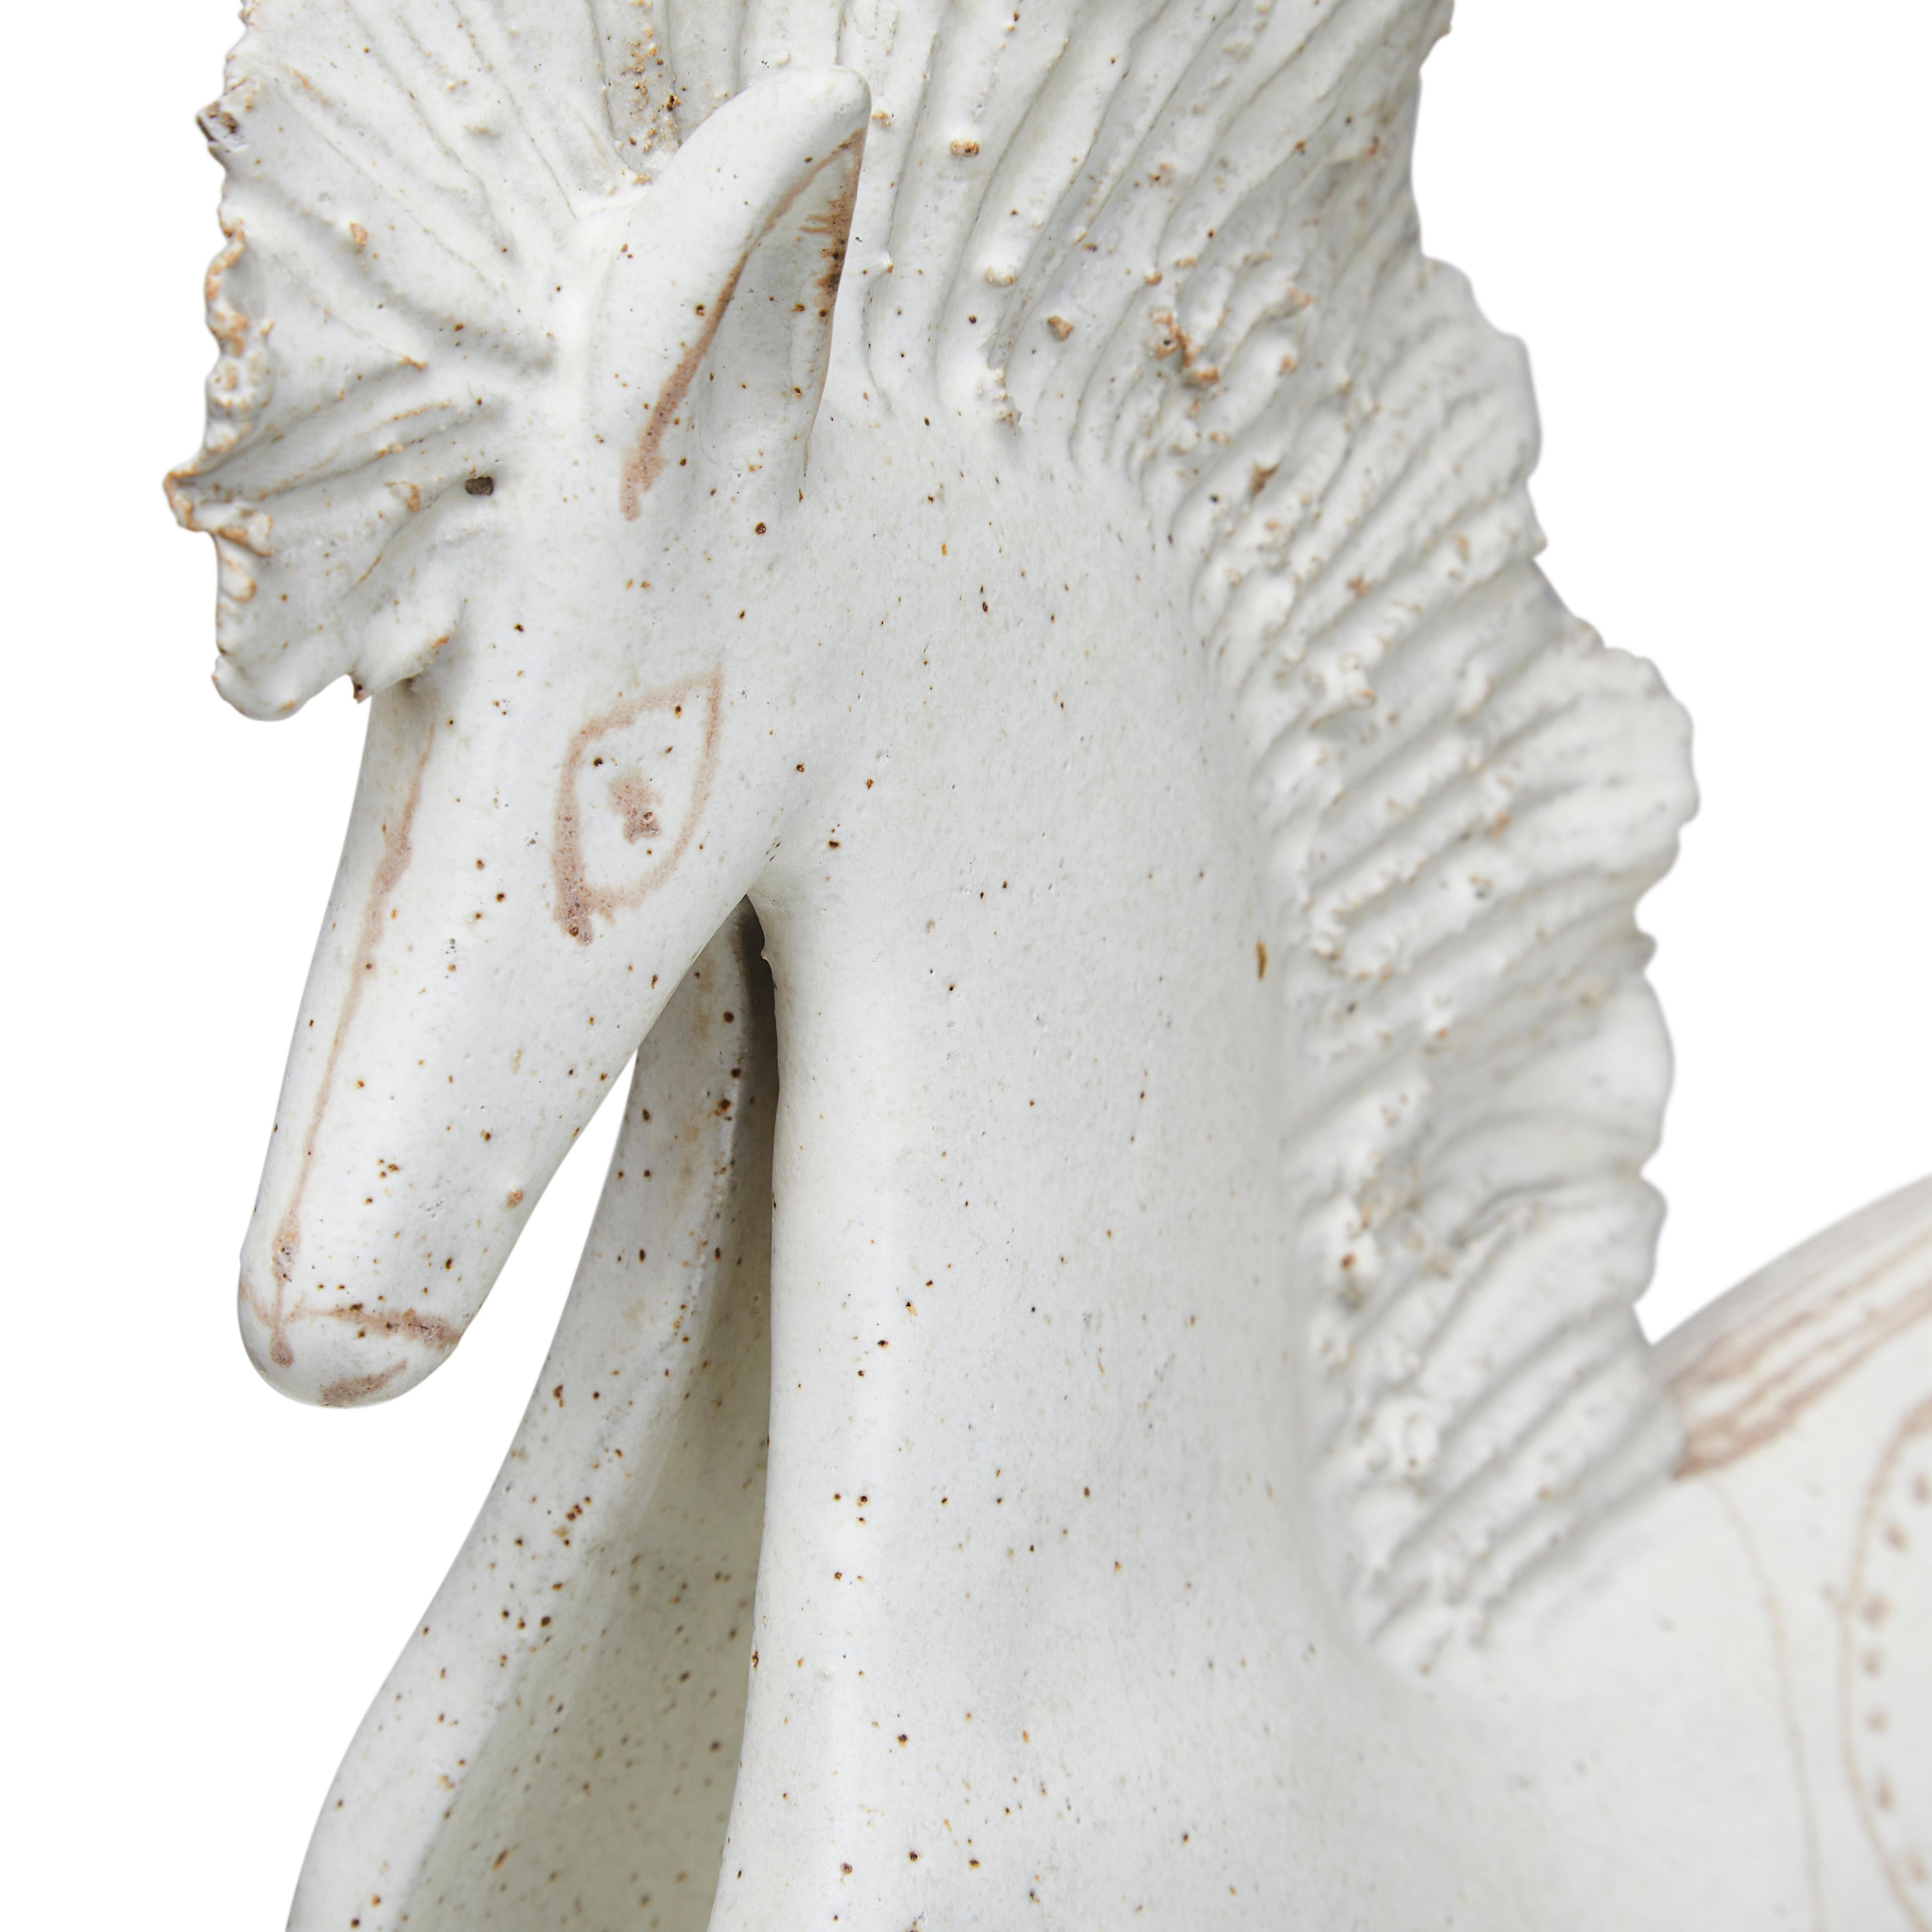 Grand cheval en céramique émaillée mate du célèbre céramiste Bruno Gambone. Ce sujet particulier est inhabituel pour cet artiste. Italie, circa 1970.
Bruno Gambone est un céramiste italien et le fils de Guido Gambone, l'un des céramistes les plus